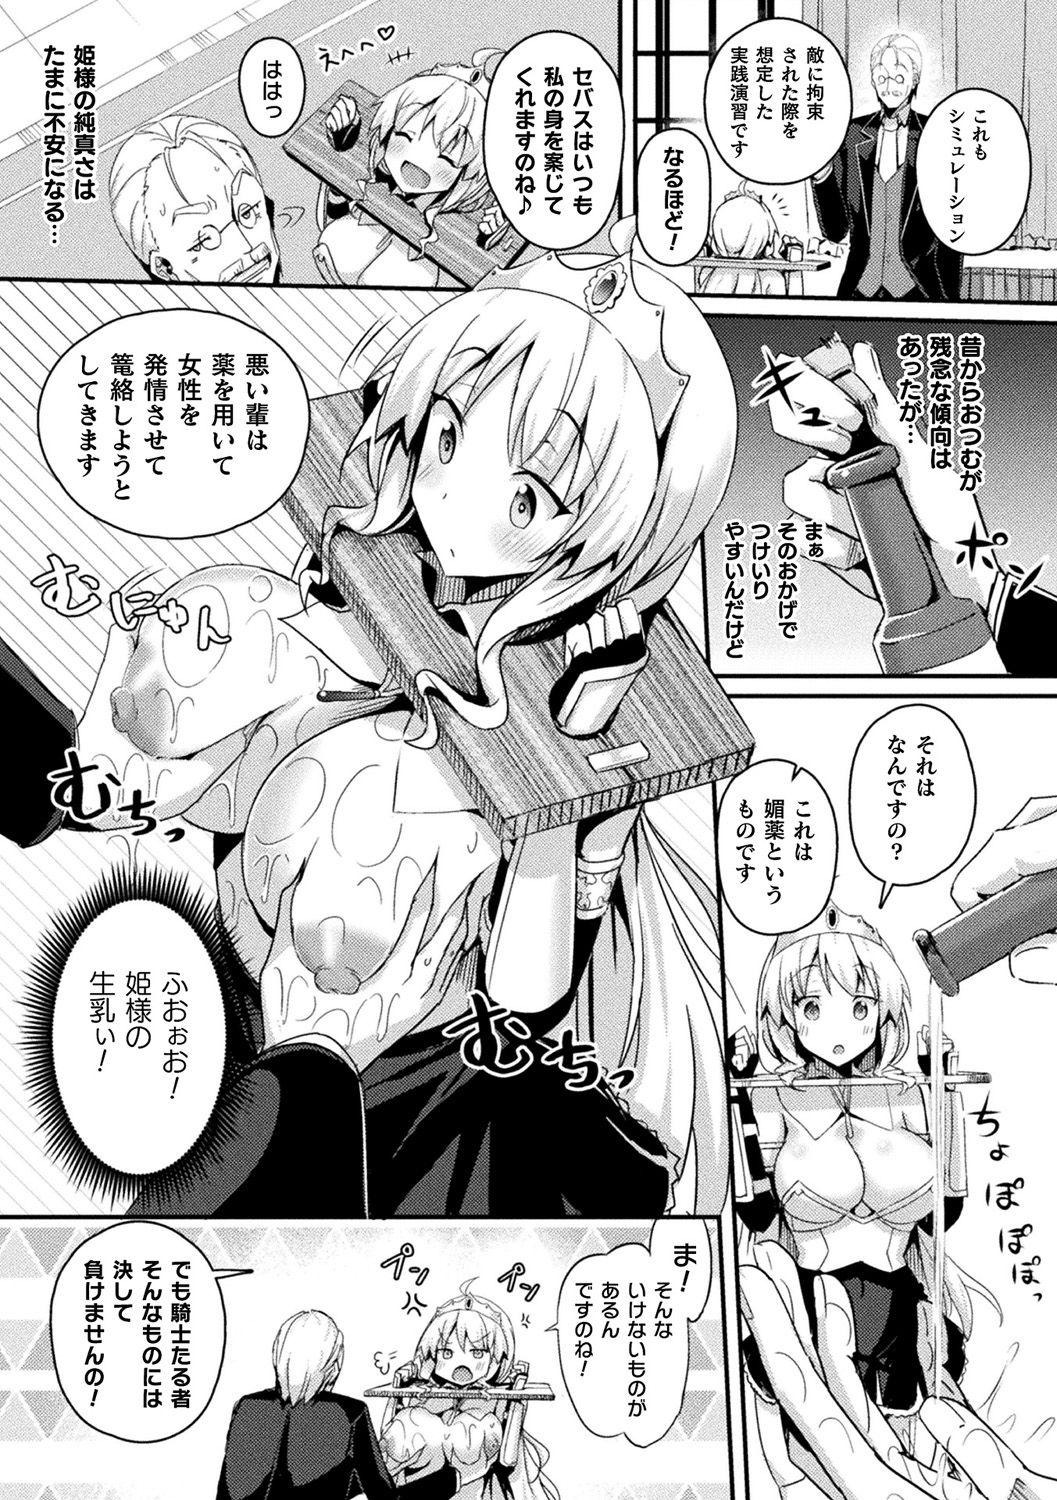 [Anthology] Bessatsu Comic Unreal Ponkotsu Fantasy Heroine H ~Doji o Funde Gyakuten Saretari Ero Trap ni Hamattari!?~ Vol. 2 [Digital] 10